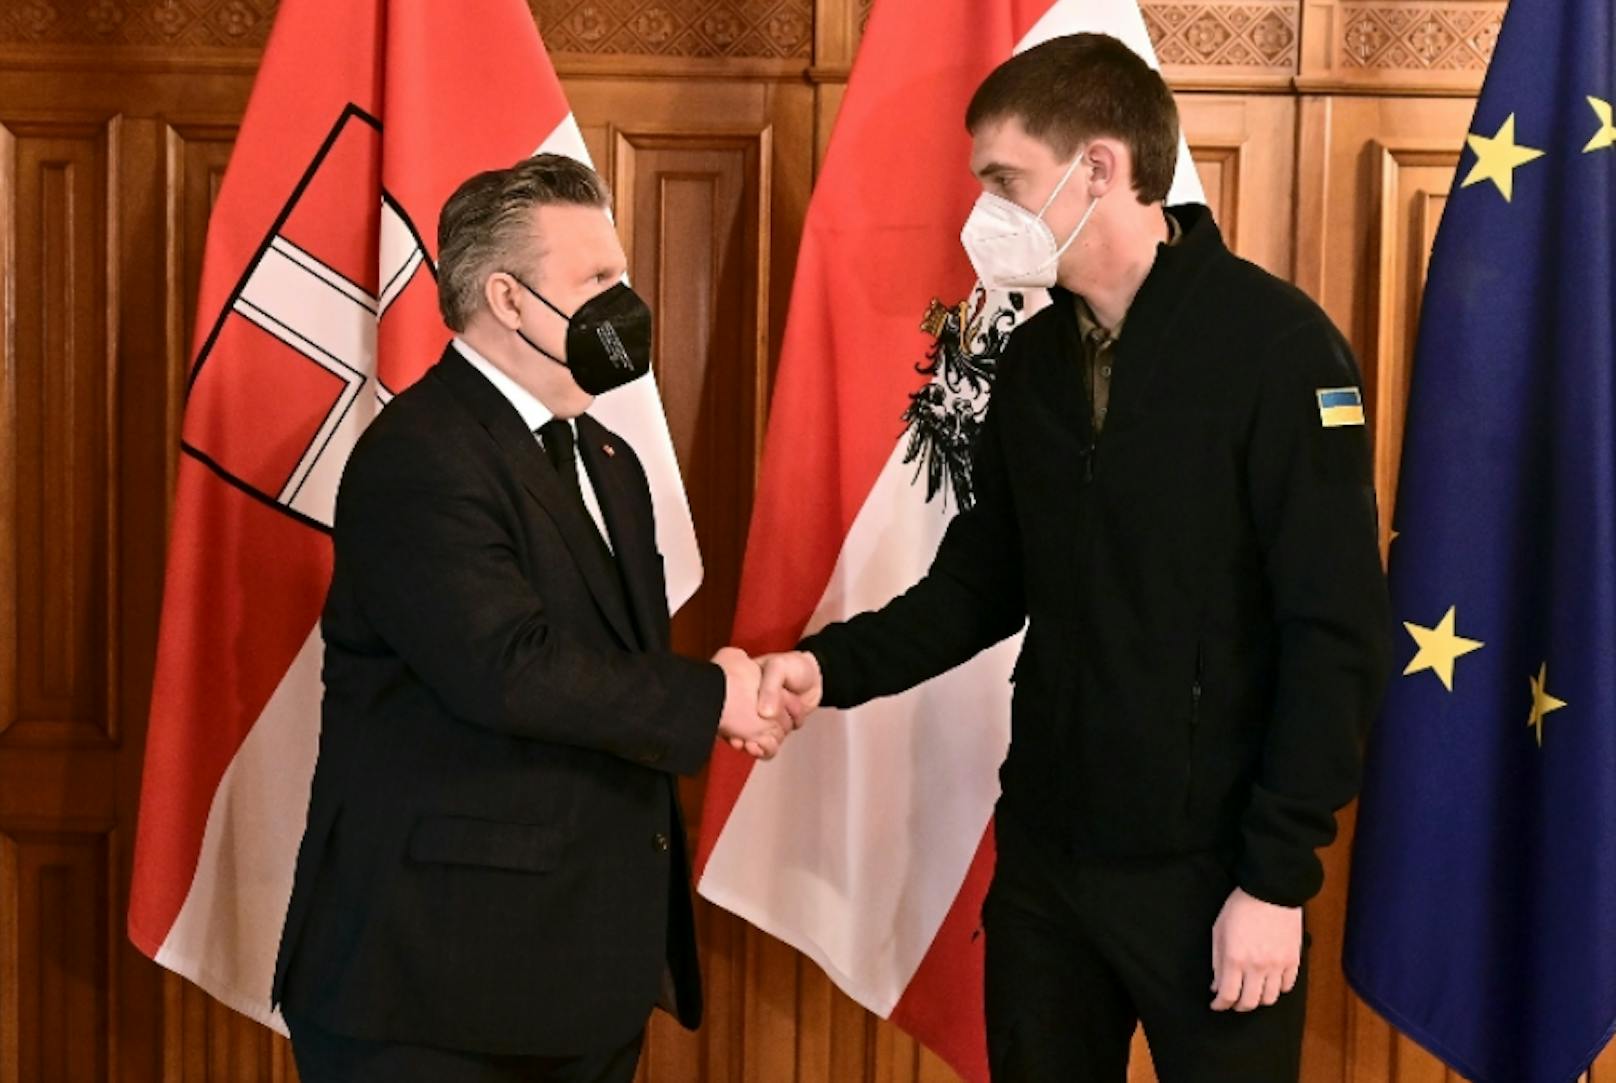 Bürgermeister Michael Ludwig (SPÖ) empfing am Mittwoch Iwan Fedorow, Stadtchef von Melitopol im Wiener Rathaus.